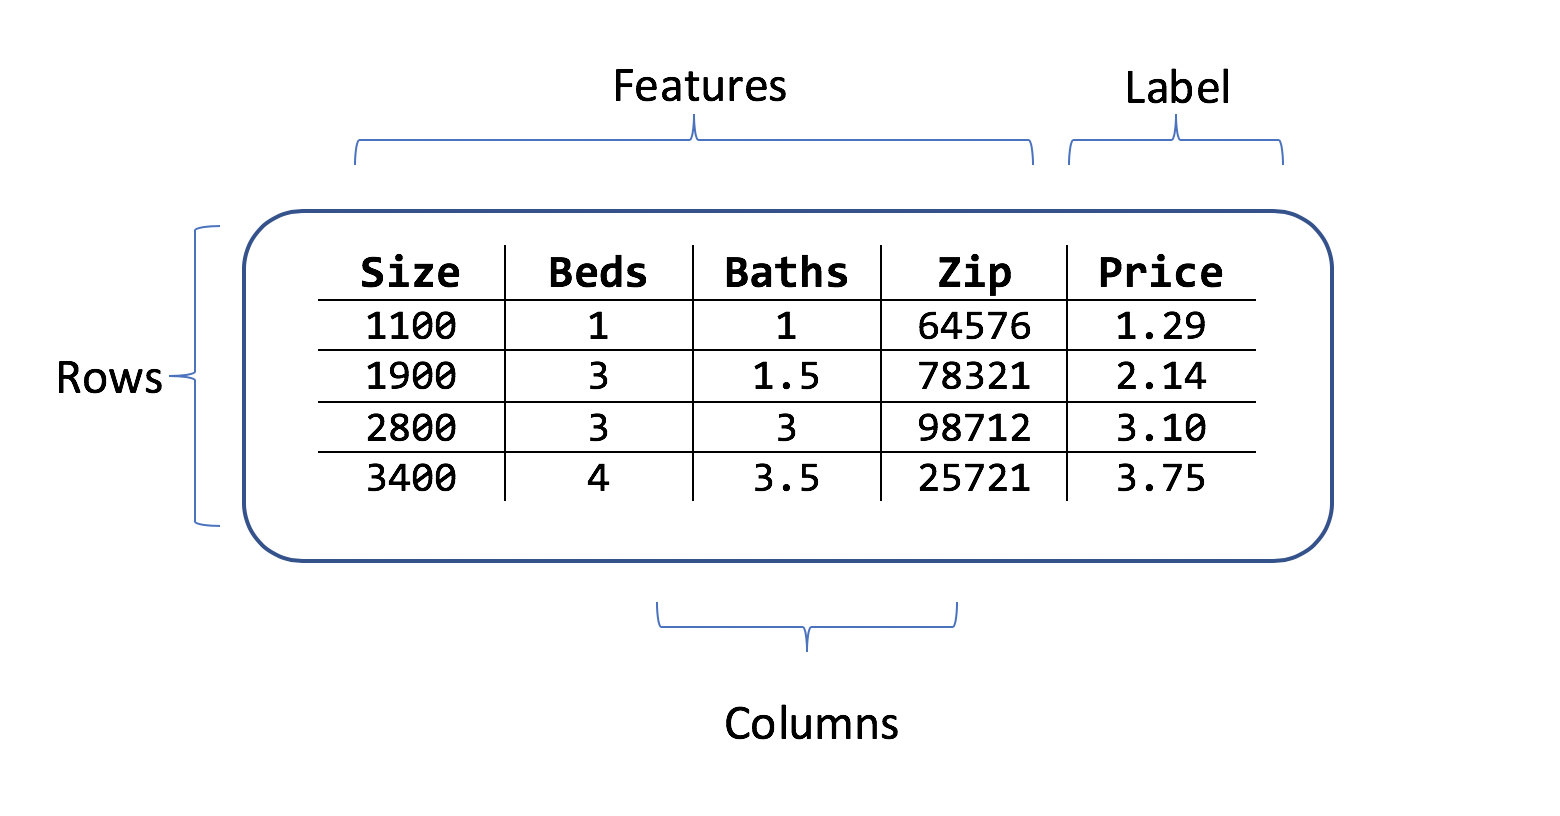 Tabla donde se muestran las filas y columnas de datos de precios de viviendas con características que constan de etiquetas de tamaño, habitaciones, código postal y precio